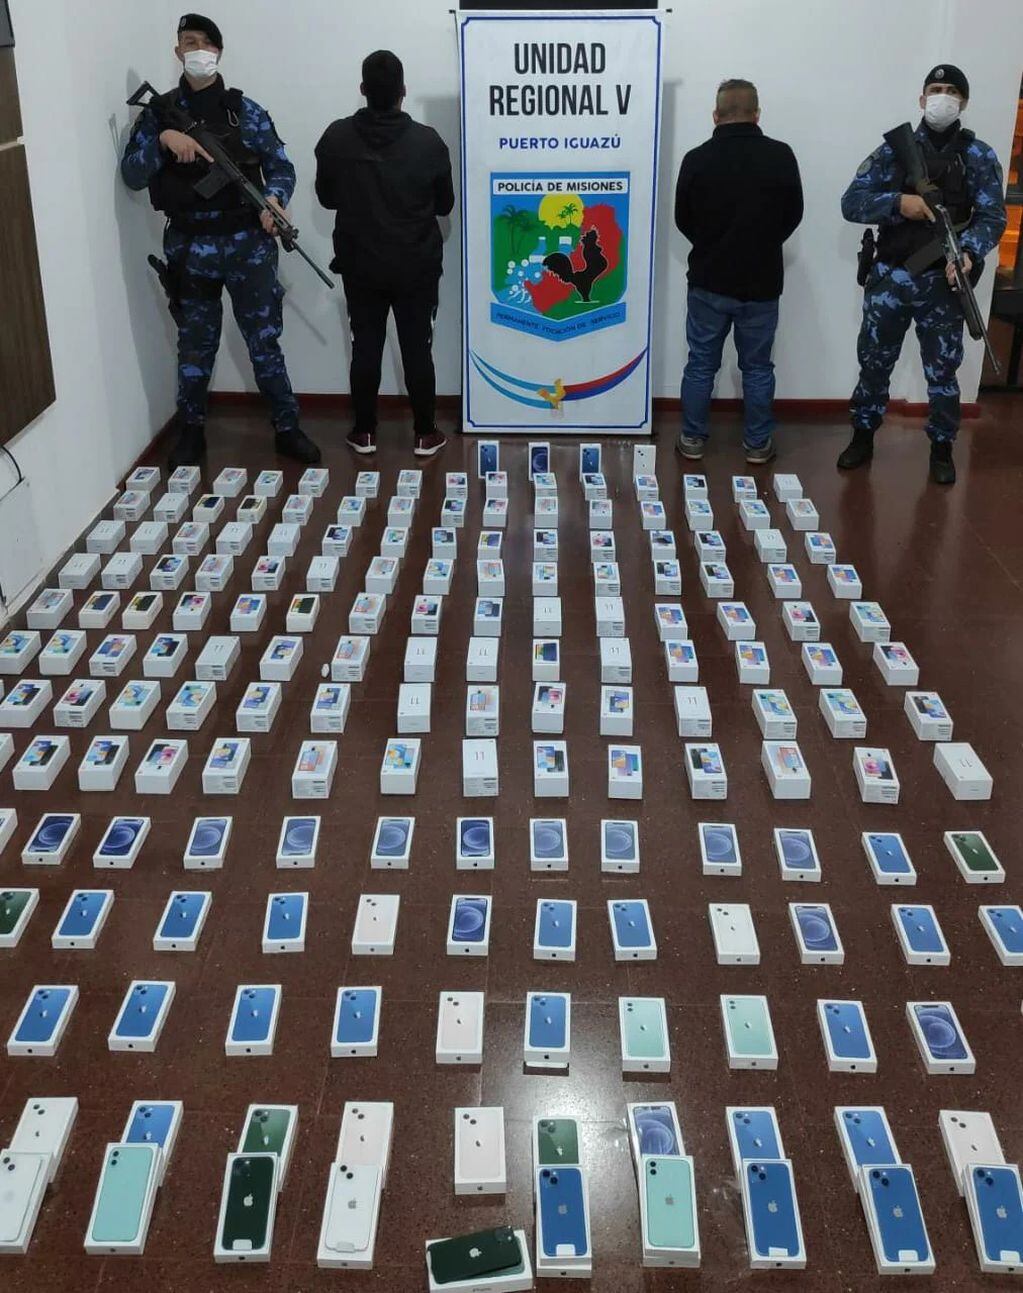 Más de 16 millones de pesos incautados en celulares ilegales en Puerto Iguazú.